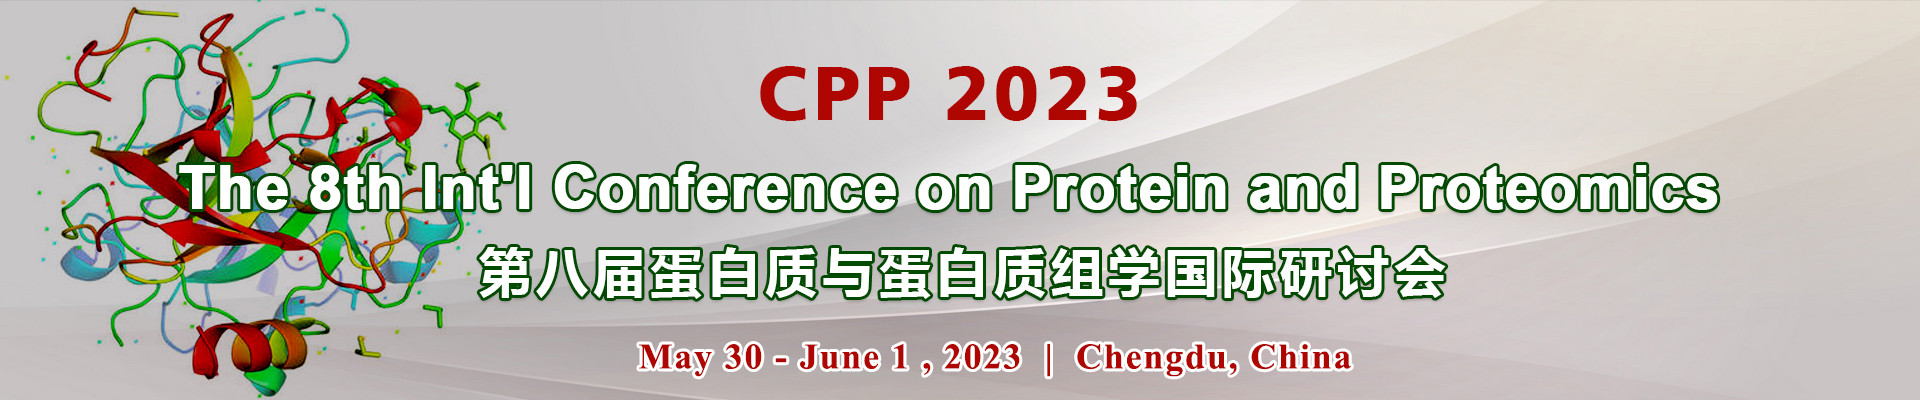 第八届蛋白质与蛋白质组学国际研讨会(CPP 2023)